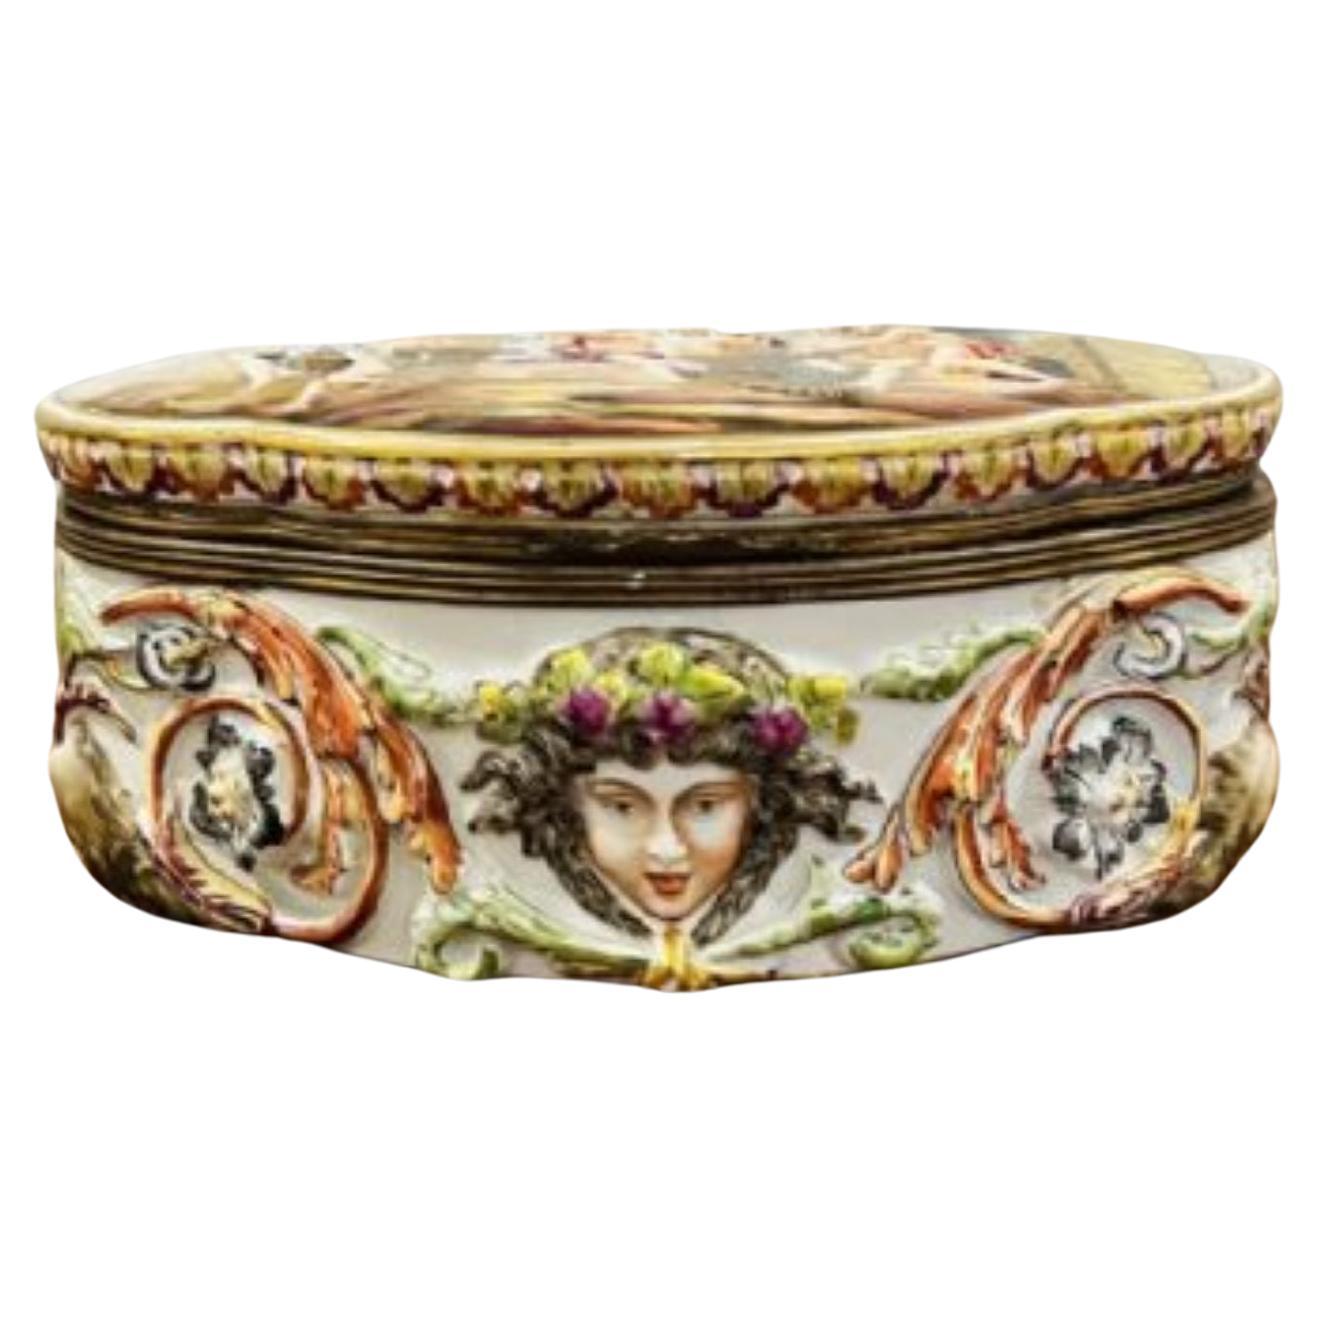 Quality antique Victorian Italian Capodimonte porcelain table casket 